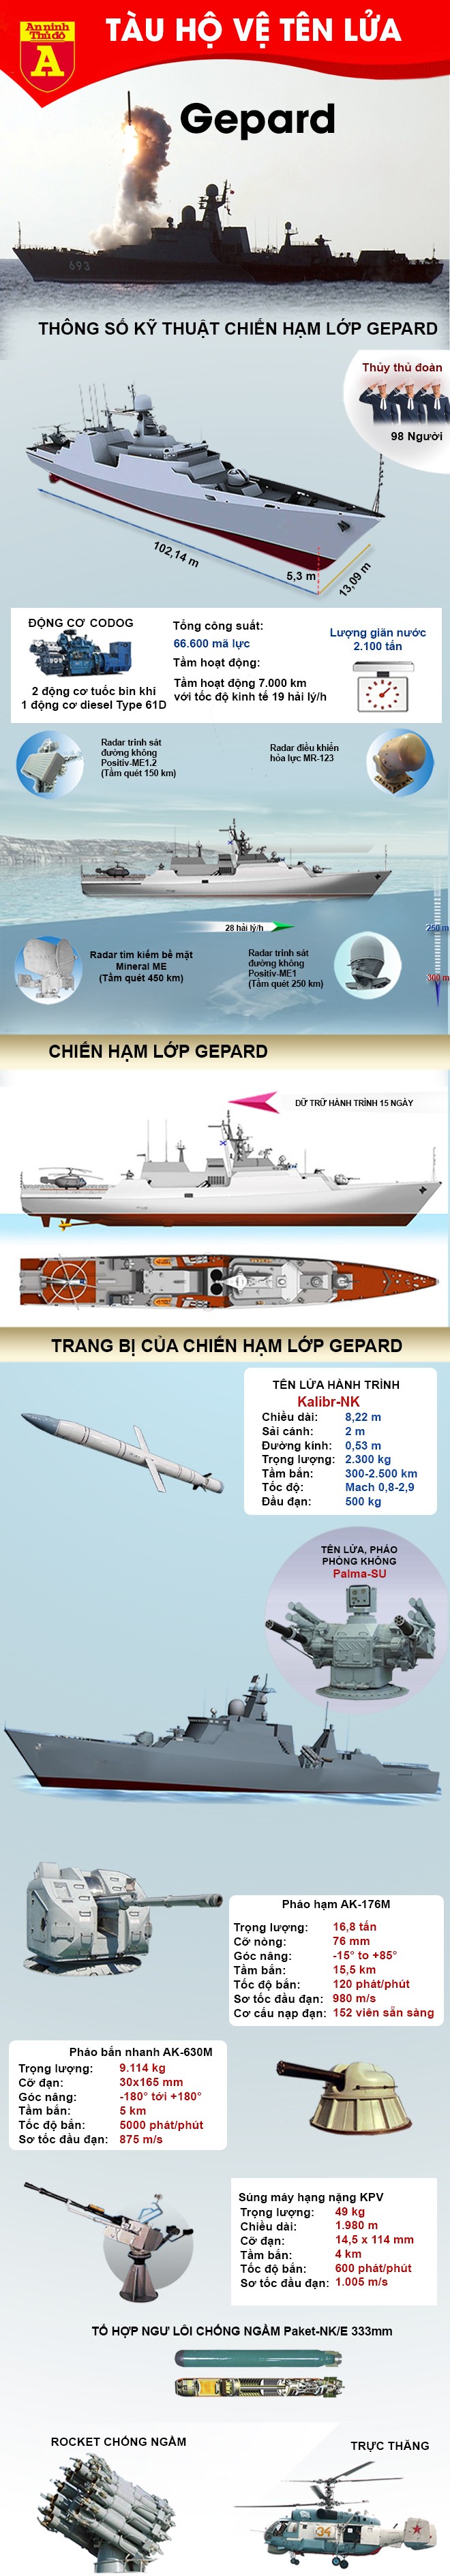 [Infographic] Sức mạnh từ chiến hạm Gepard nhả "sát thần" Kalibr tiêu diệt phiến quân ảnh 2